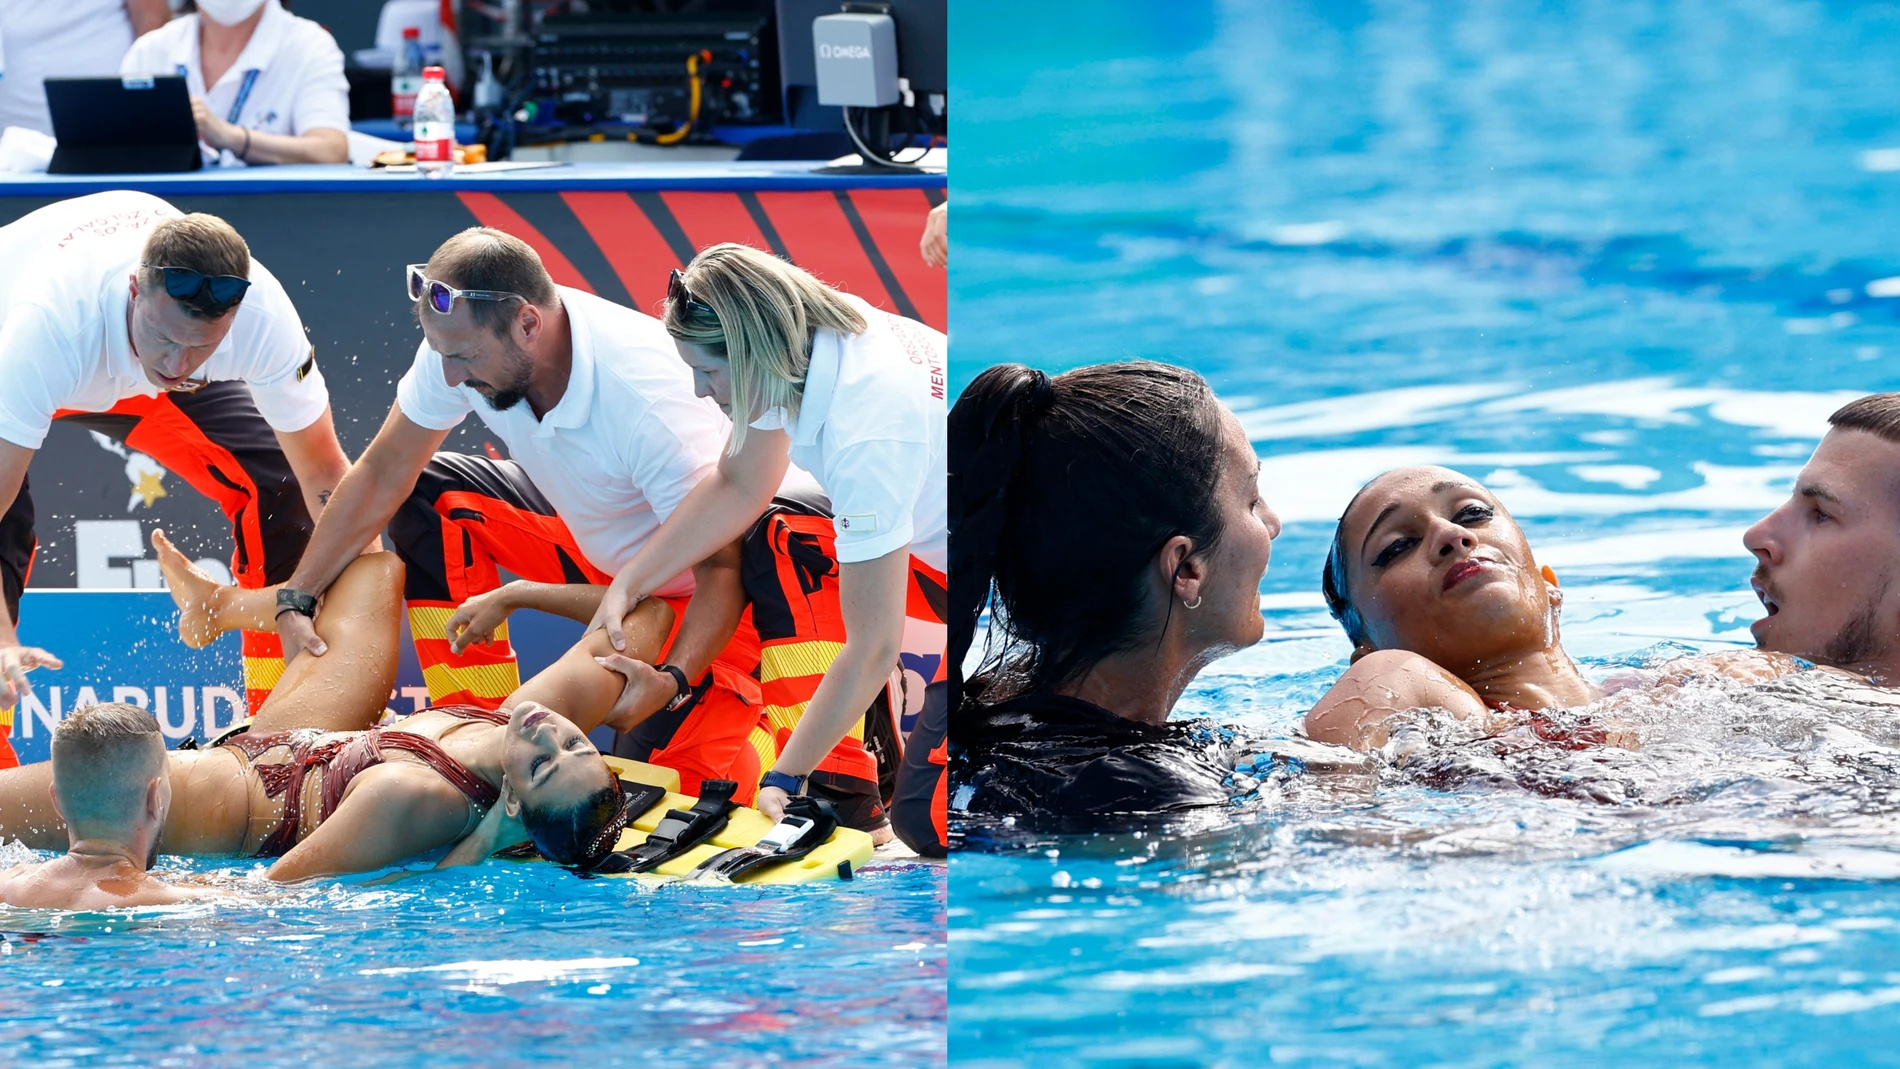 La nadadora Anita Álvarez es sacada de la piscina tras sufrir un desmayo